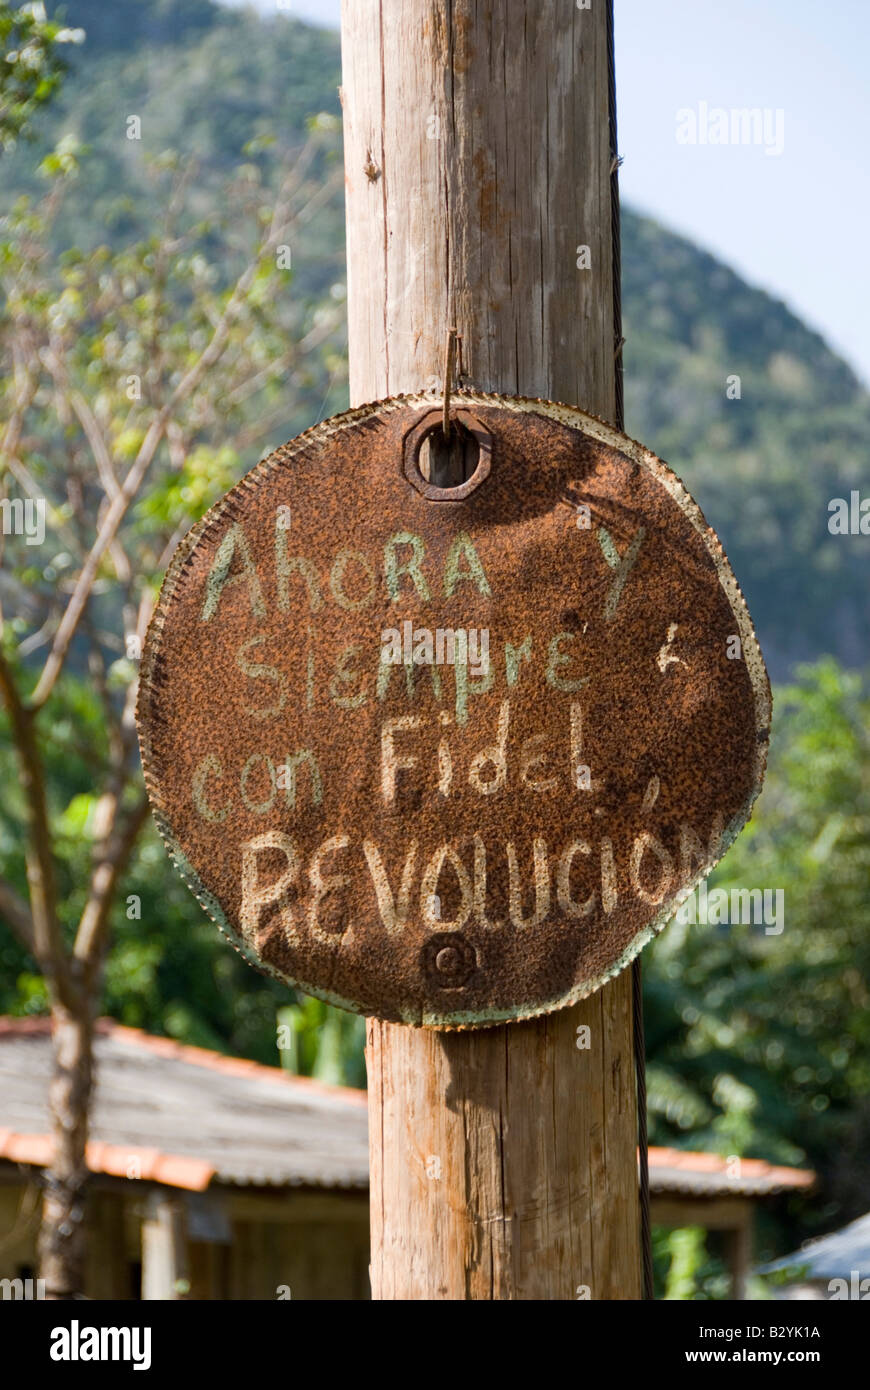 Pro segno della rivoluzione a sostegno di Fidel Castro scritto su un vecchio barilotto di acciaio nella campagna cubana Foto Stock